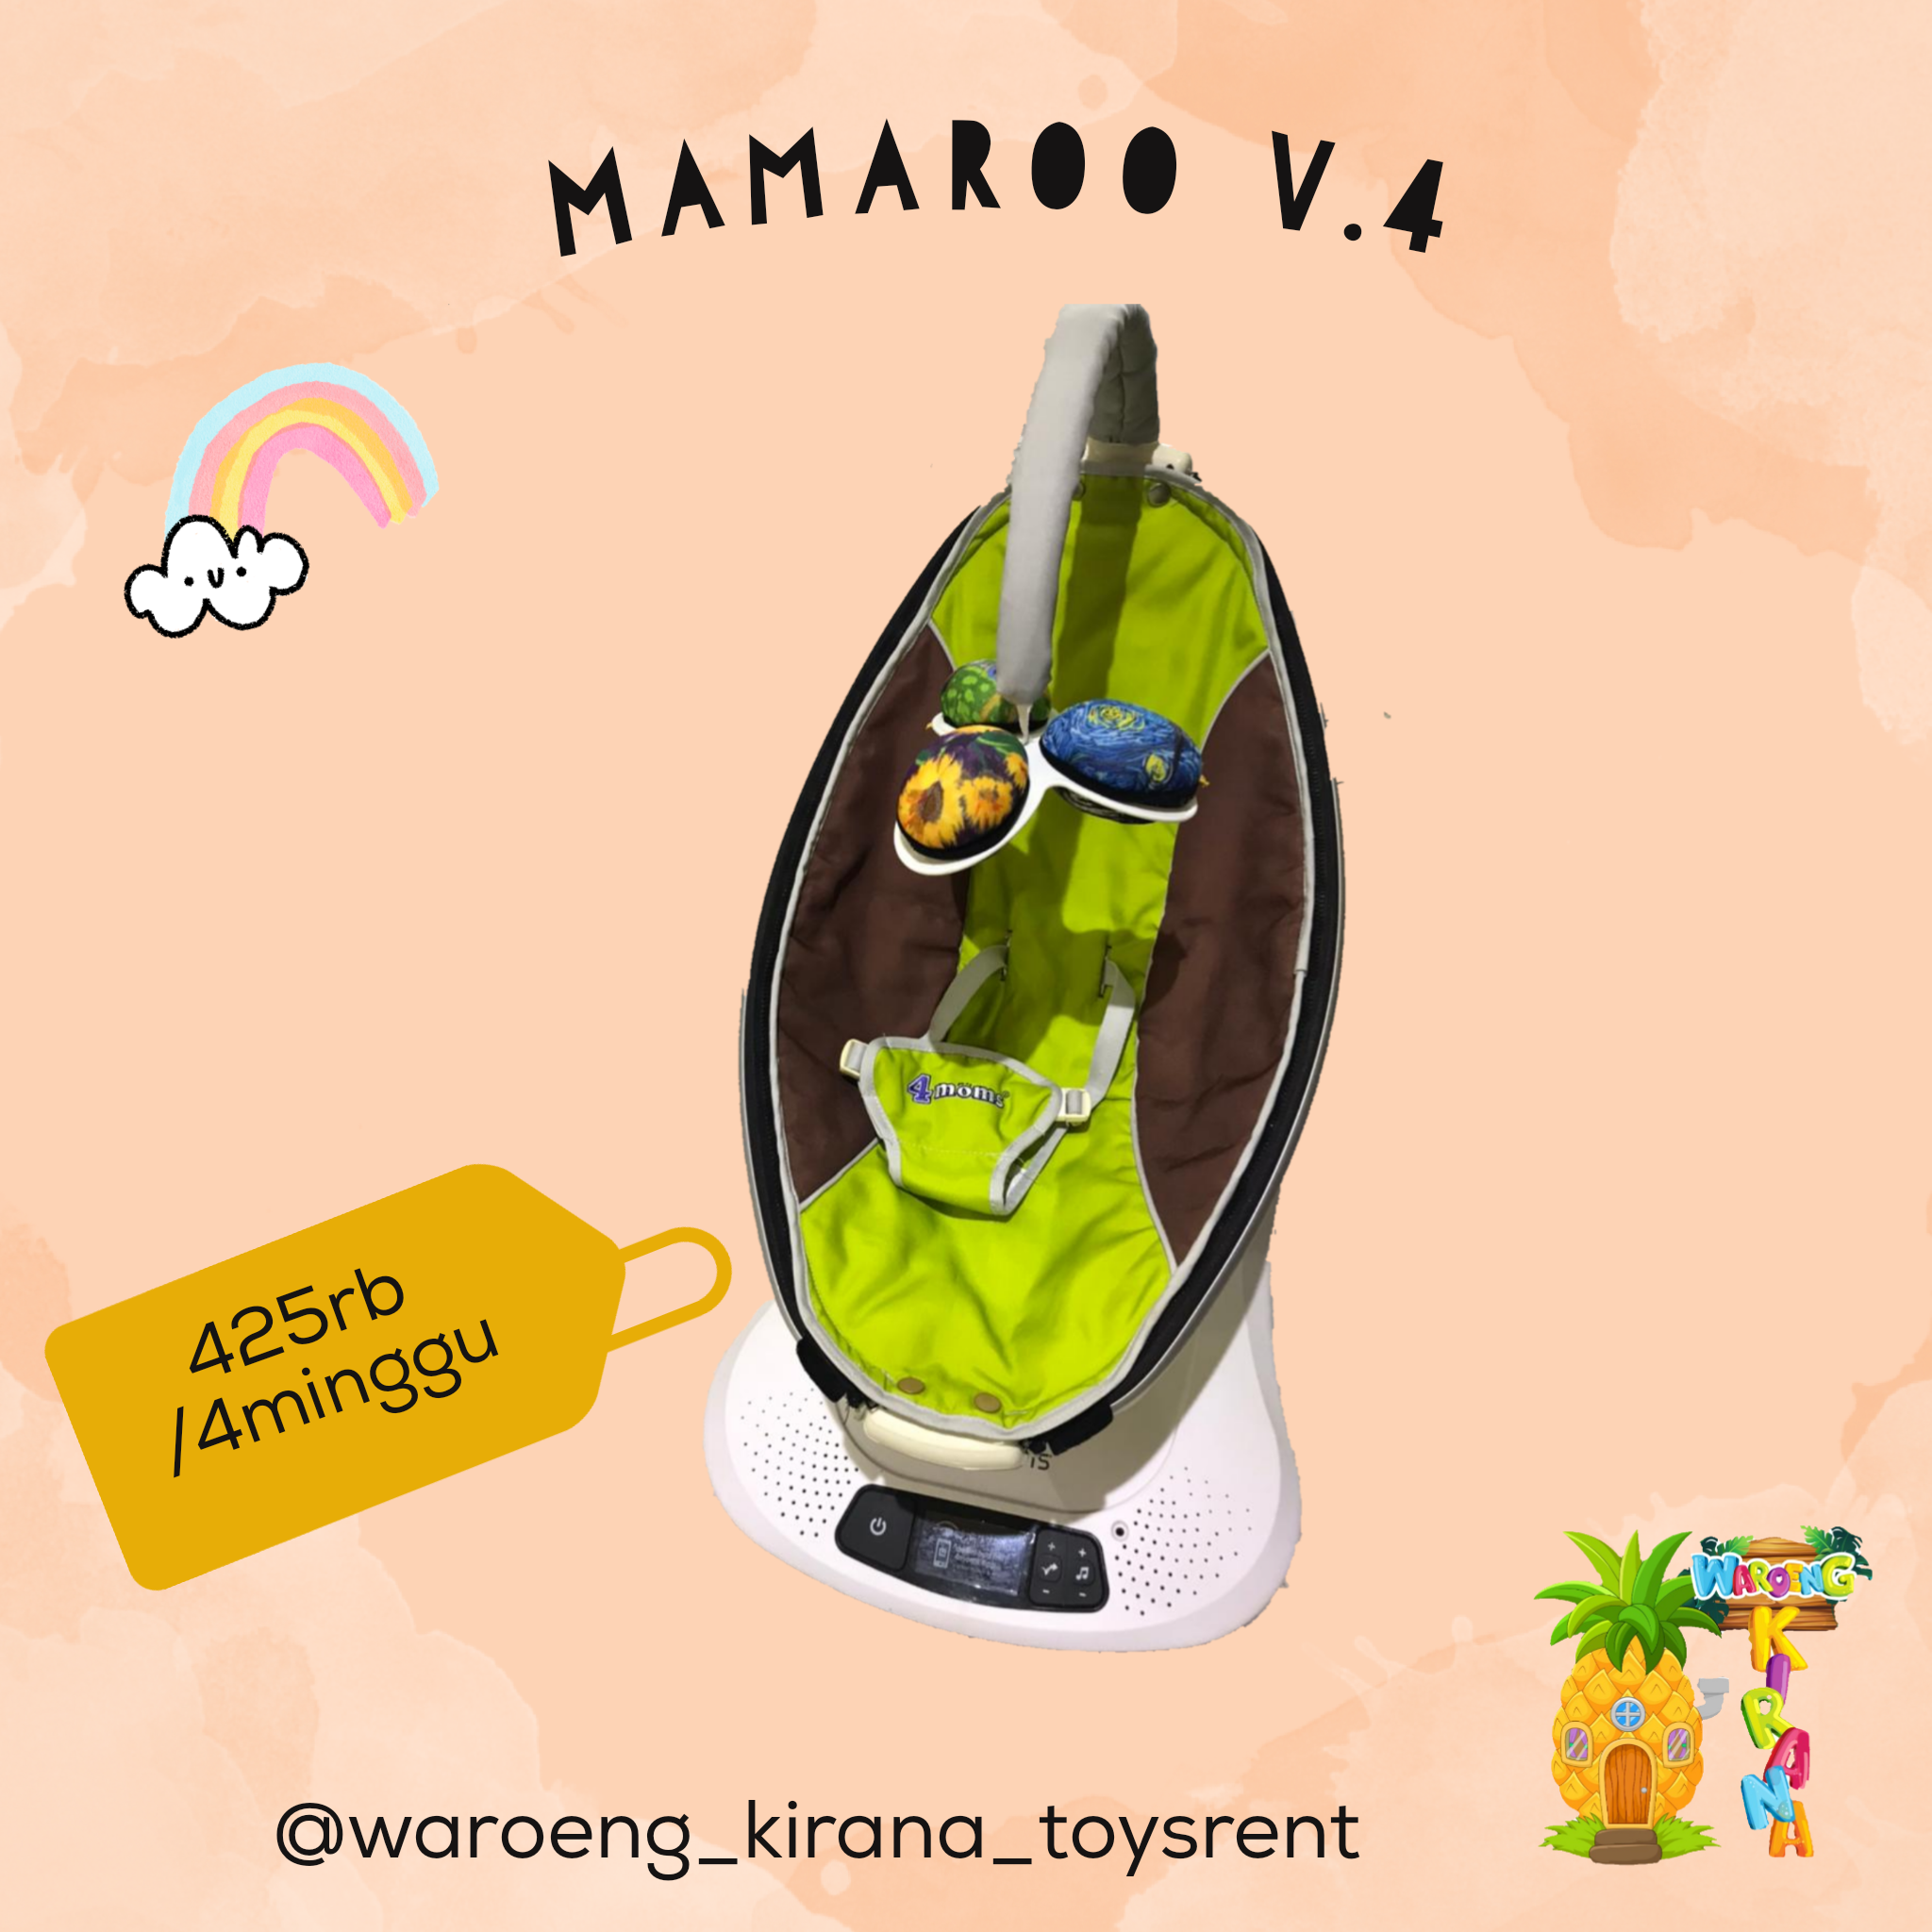 MAMAROO V4